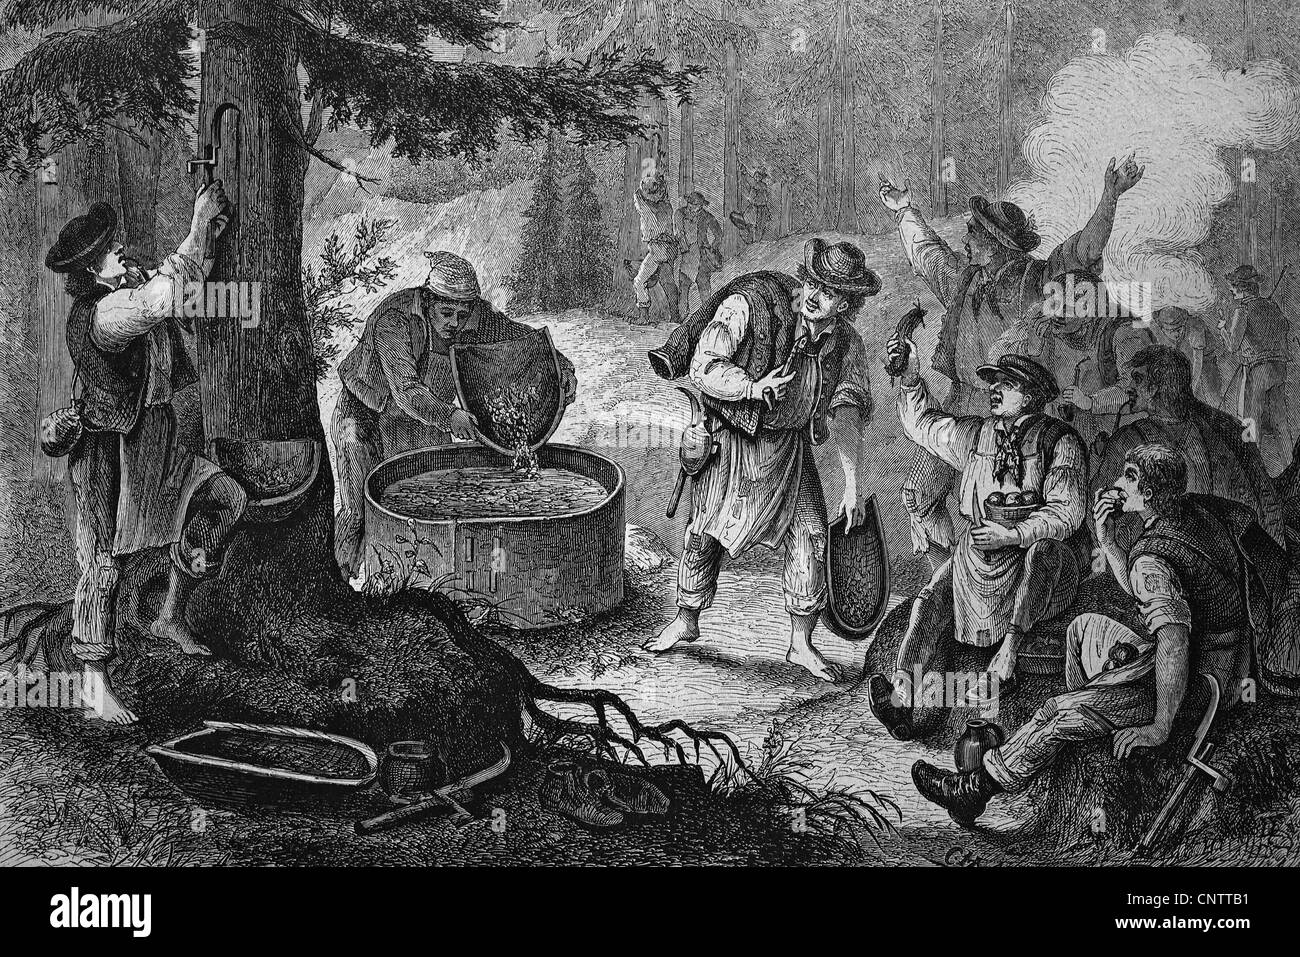 Jarras de ebullición de tono de resina de árbol en el Vogtland, histórico grabado, circa 1870 Foto de stock